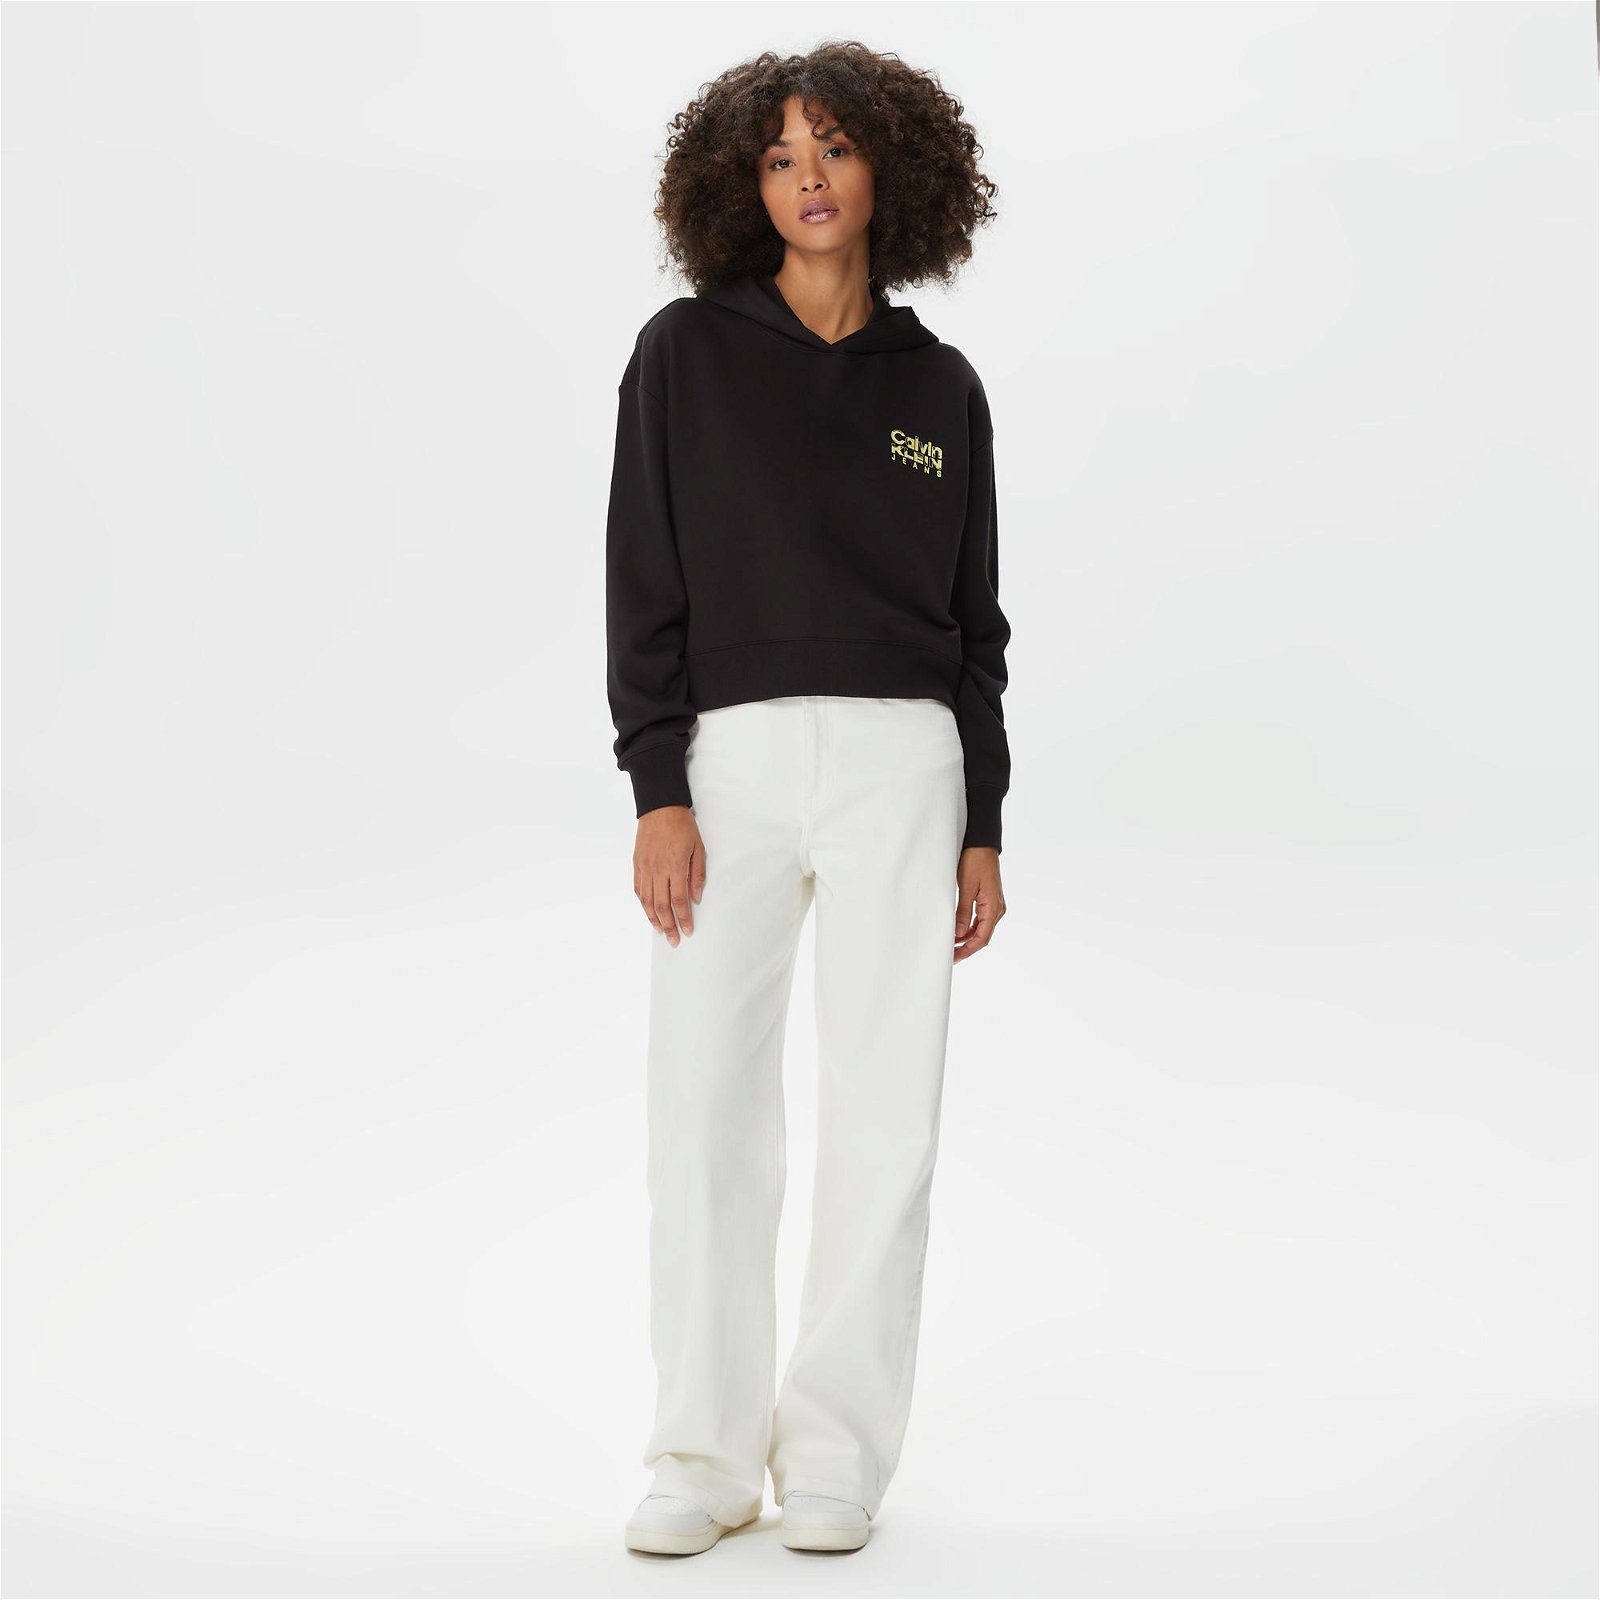 Calvin Klein Colorful Artwork Cropped Siyah Kadın Sweatshirt